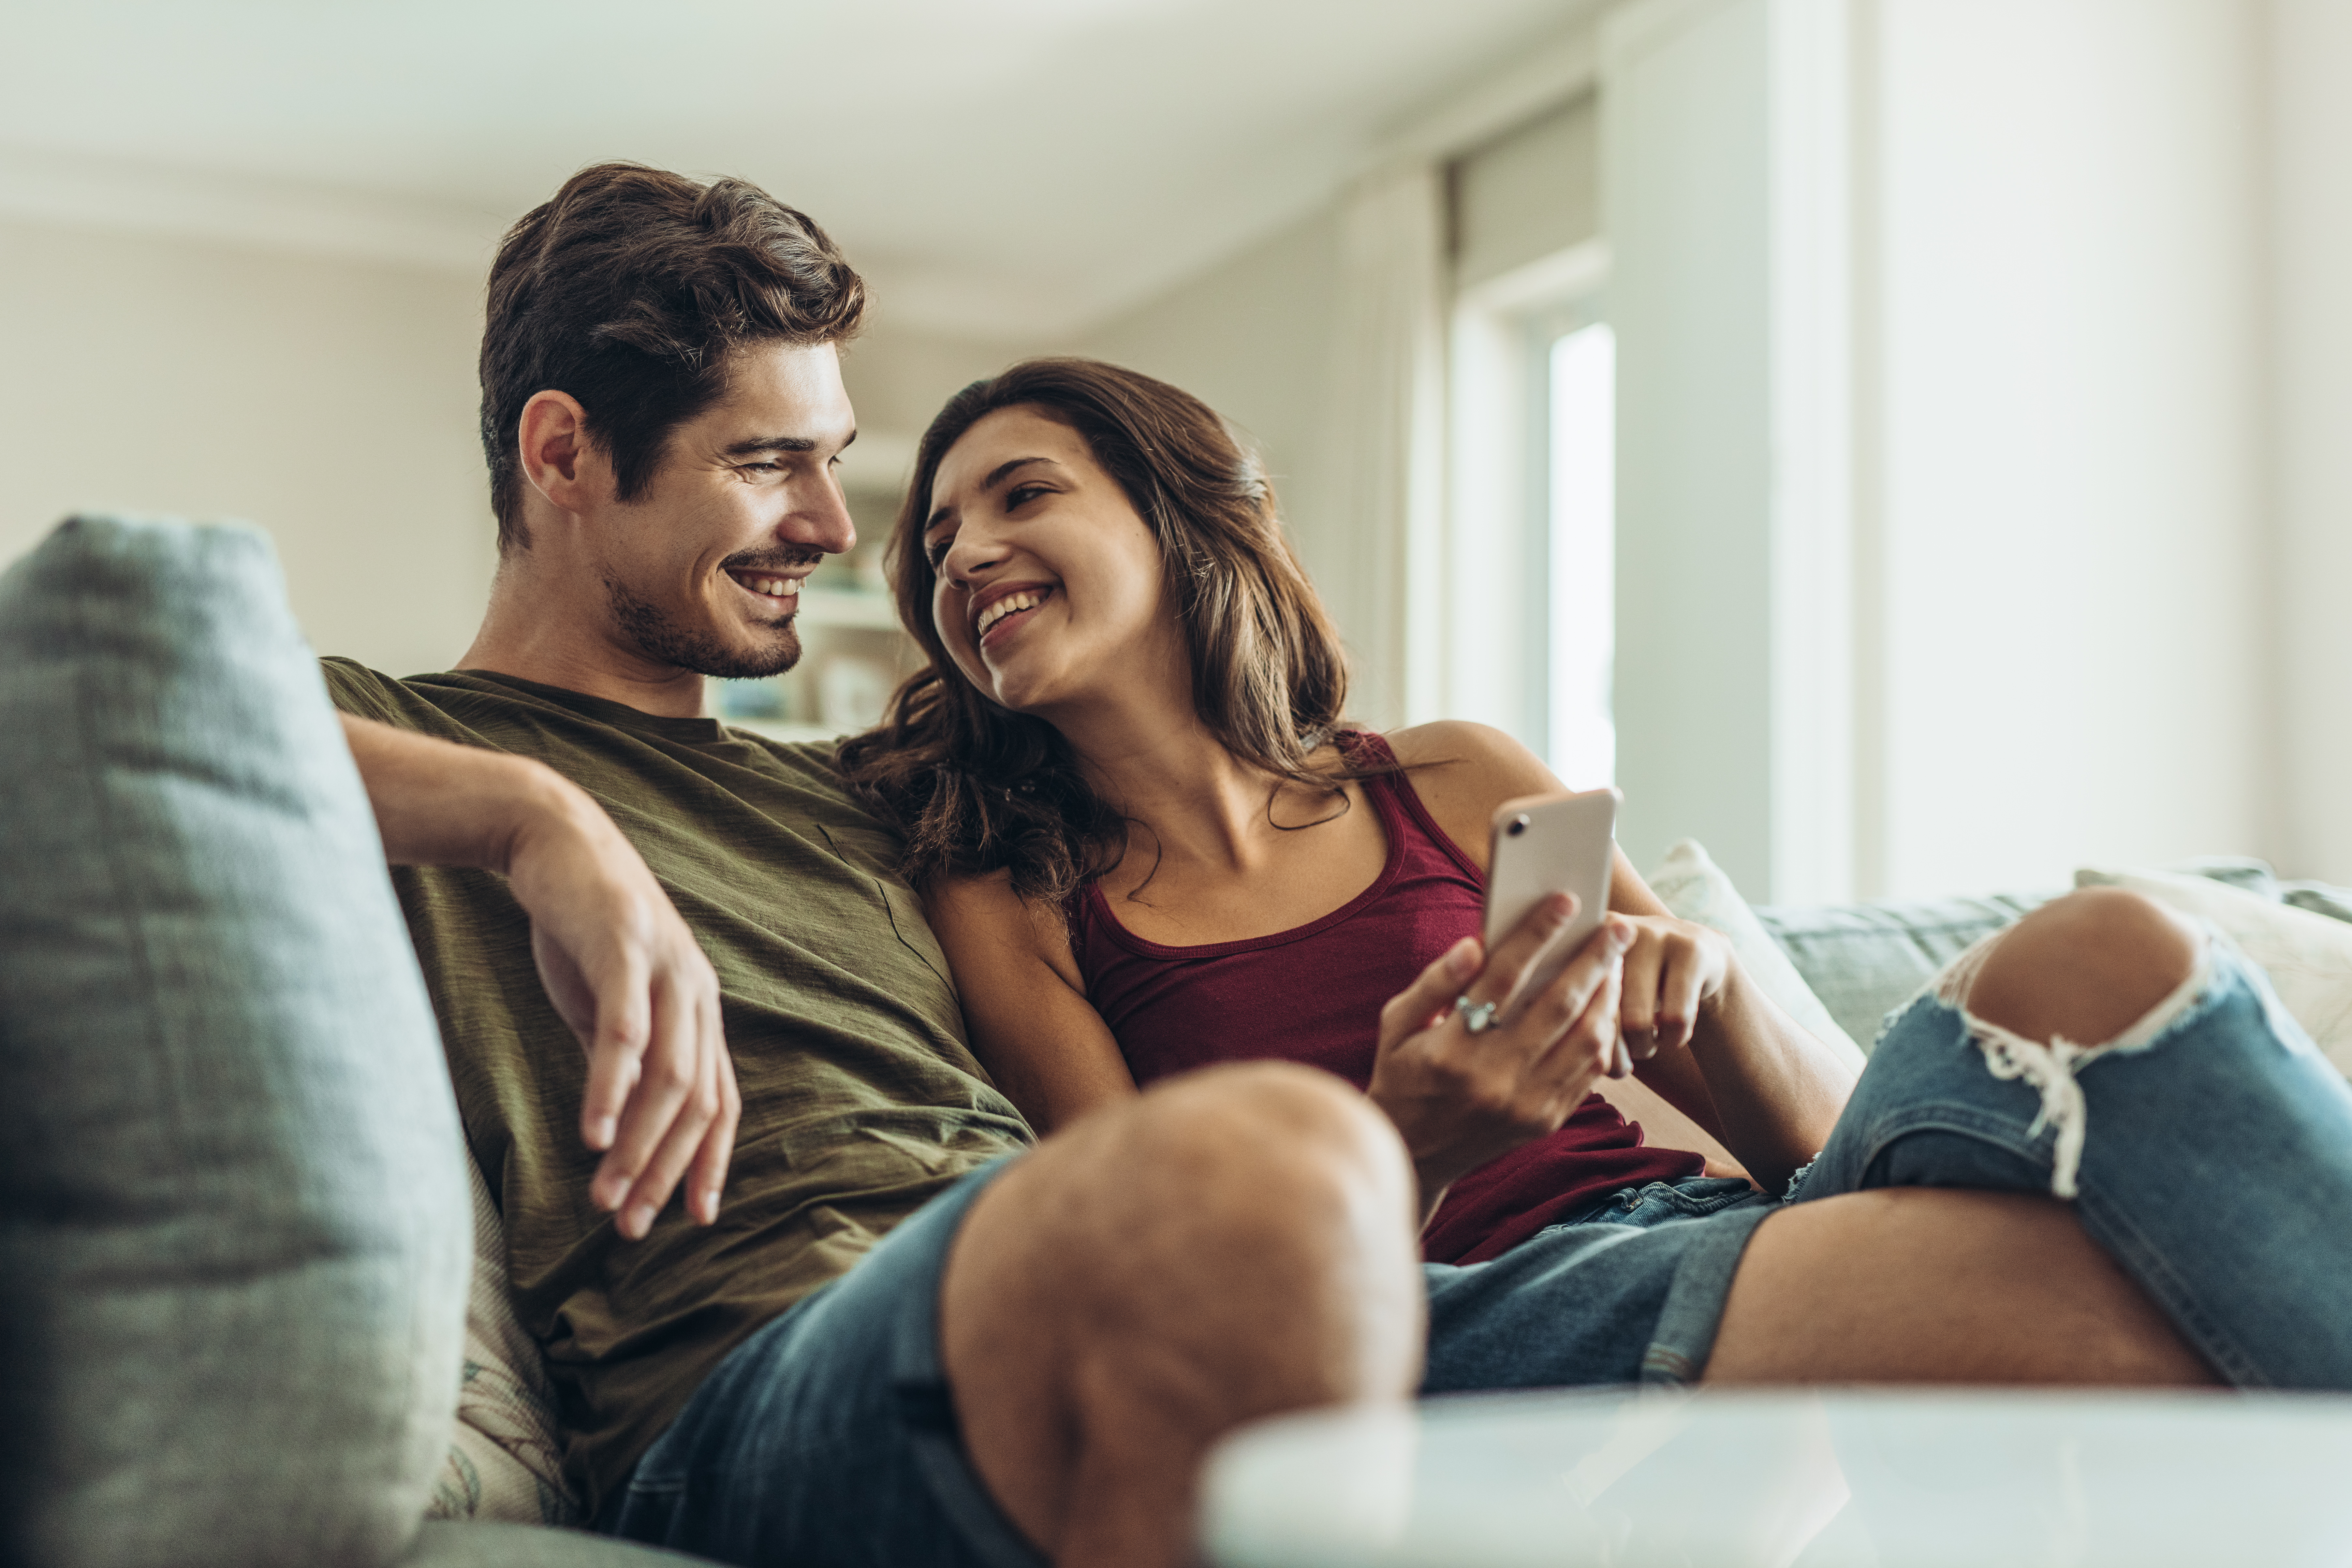 Un couple se souriant sur un canapé | Source : Shutterstock